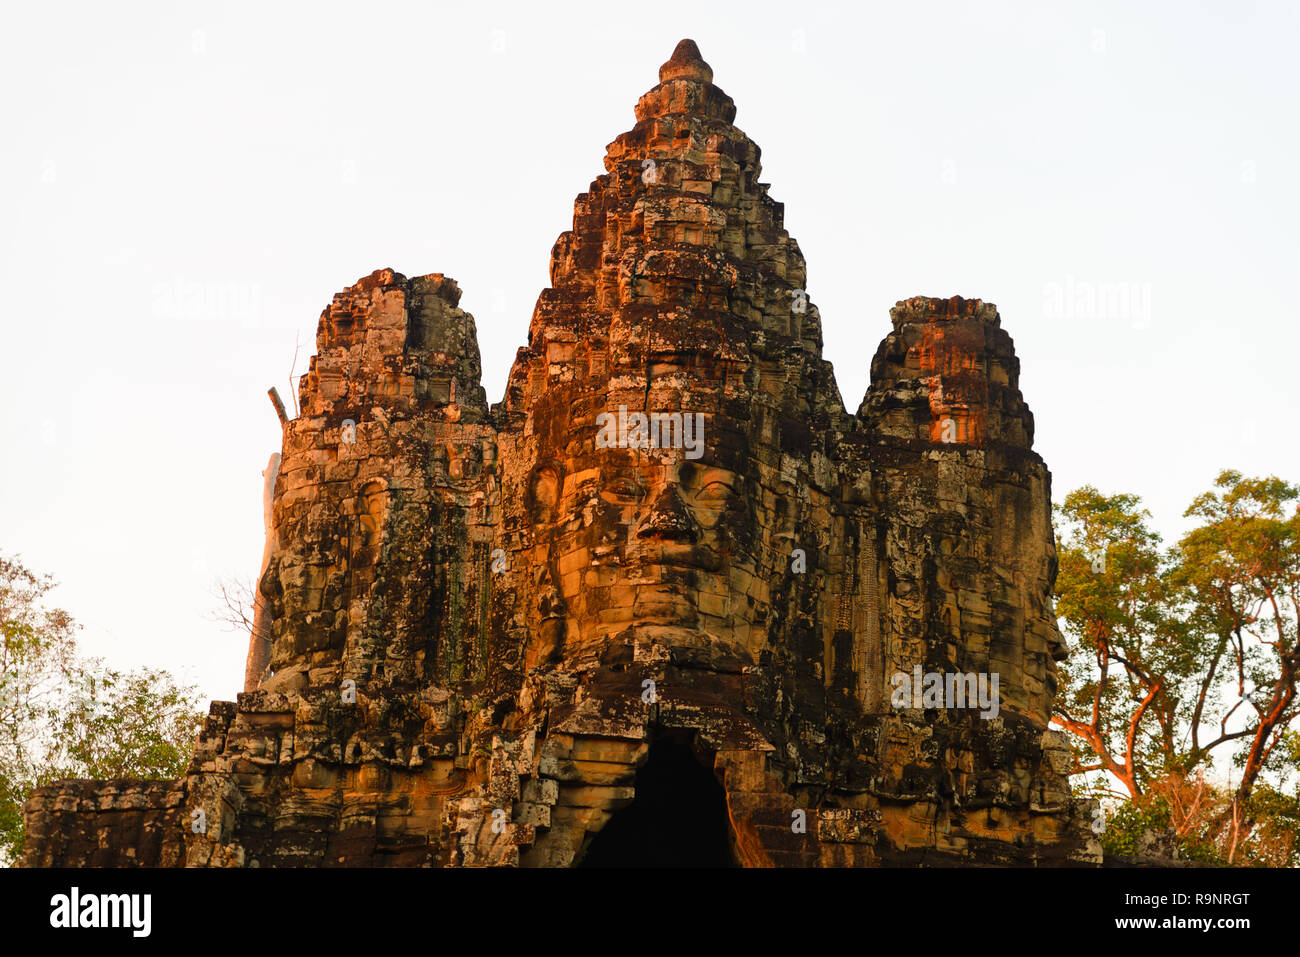 Stein Gesichter in Bayon, Angkor Thom Tempel, selektiven Fokus Abendlicht. Buddhismus meditation Konzept, weltberühmten Reiseziel, Kambodscha Tourismus Stockfoto